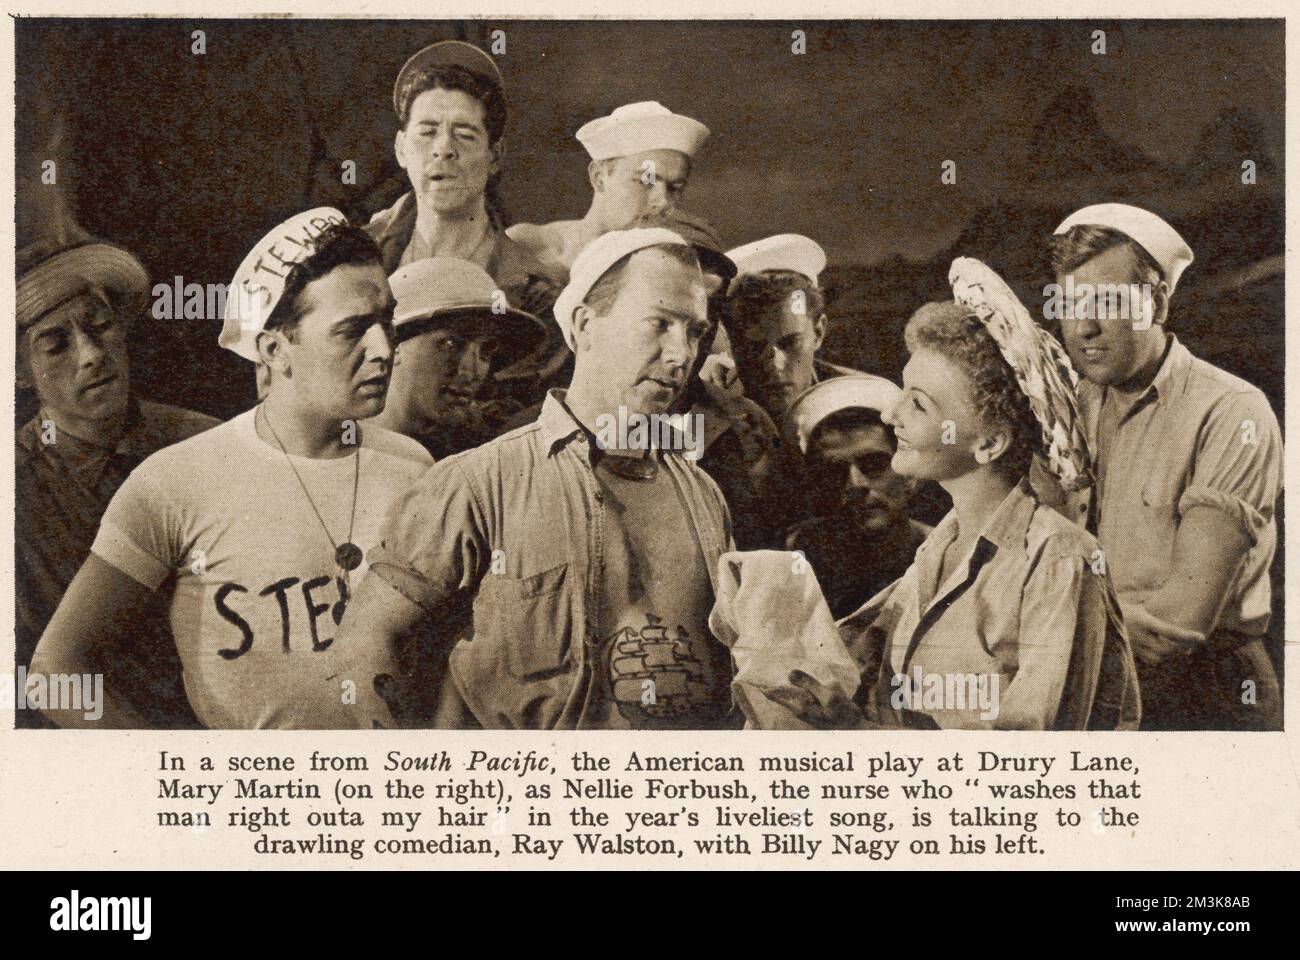 Une scène de South Pacific, la comédie musicale américaine, au Drury Lane Theatre en 1952. Mary Martin (à droite) a joué Nellie Forbush, et parle au comédien Ray Walston, avec Billy Nagy sur sa gauche. Date: 1952 Banque D'Images